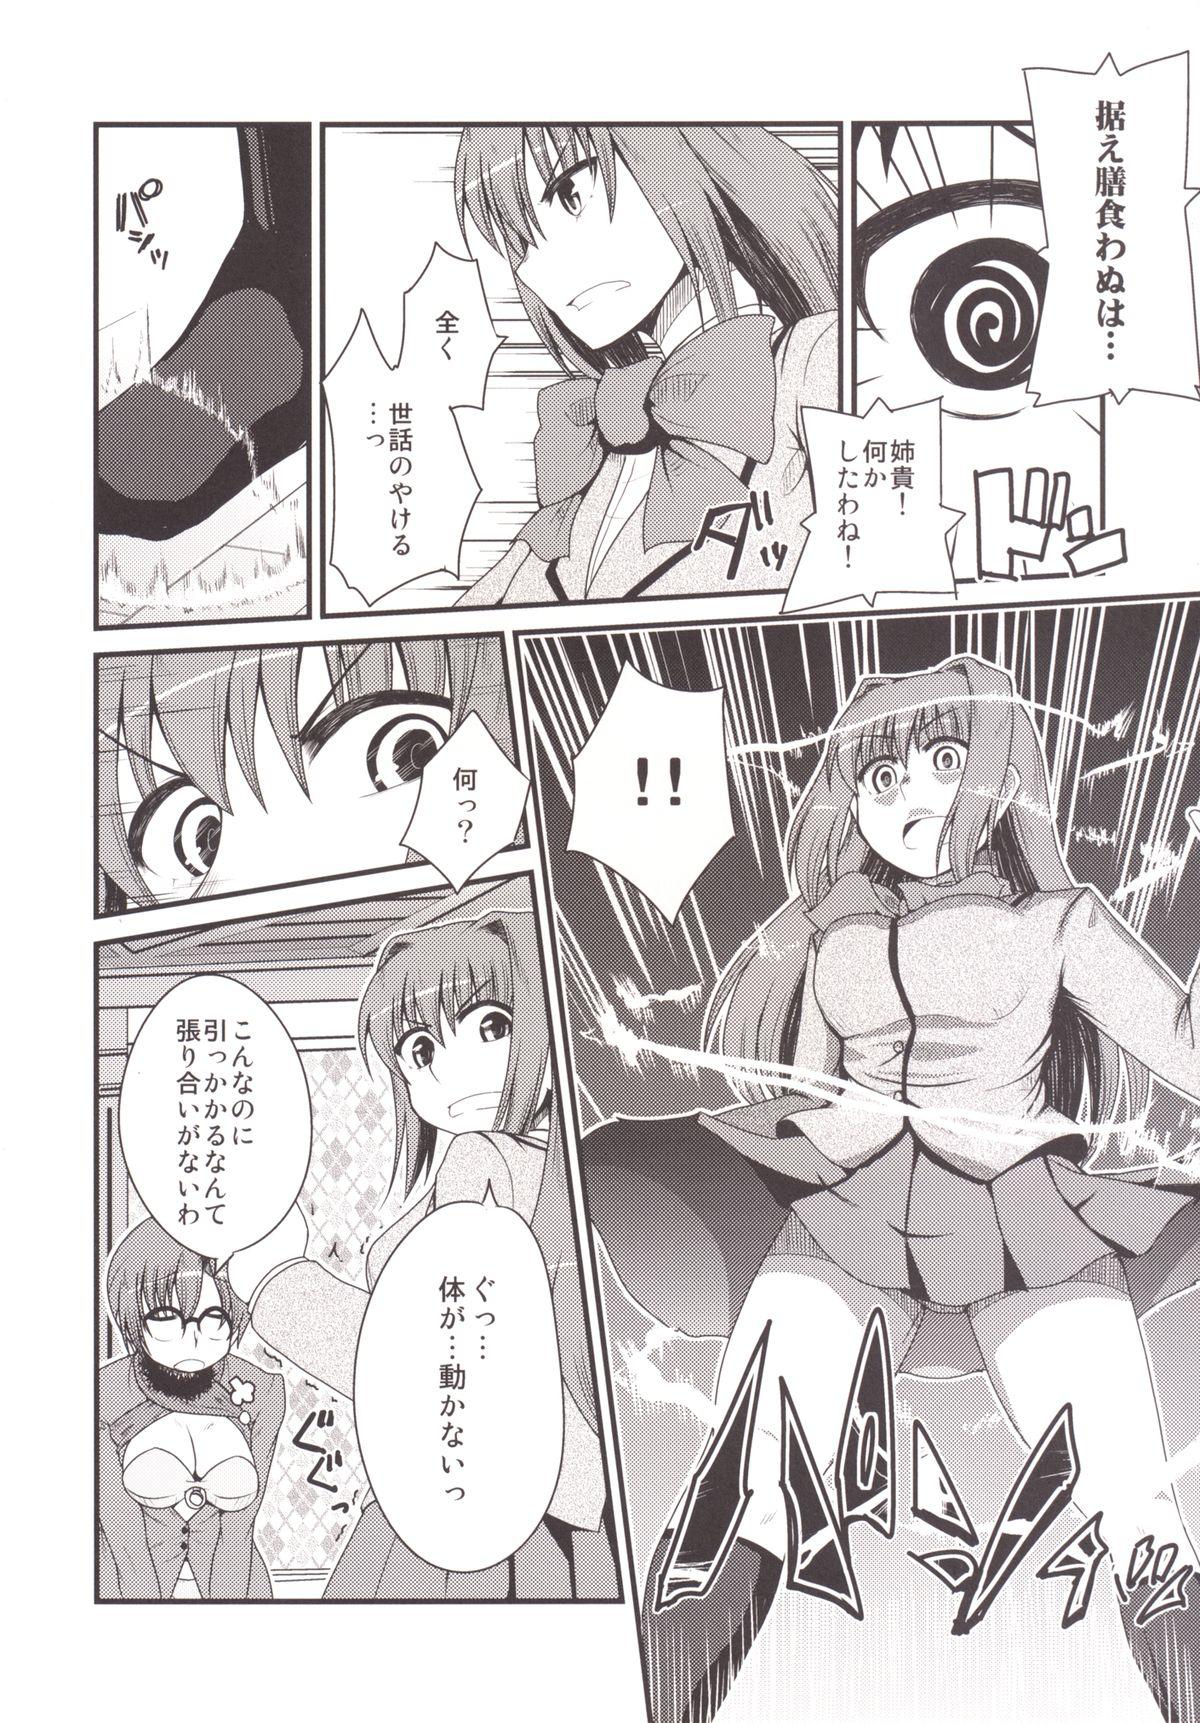 White Girl Ittsu Main 2 - Mahou tsukai no yoru Adult - Page 8